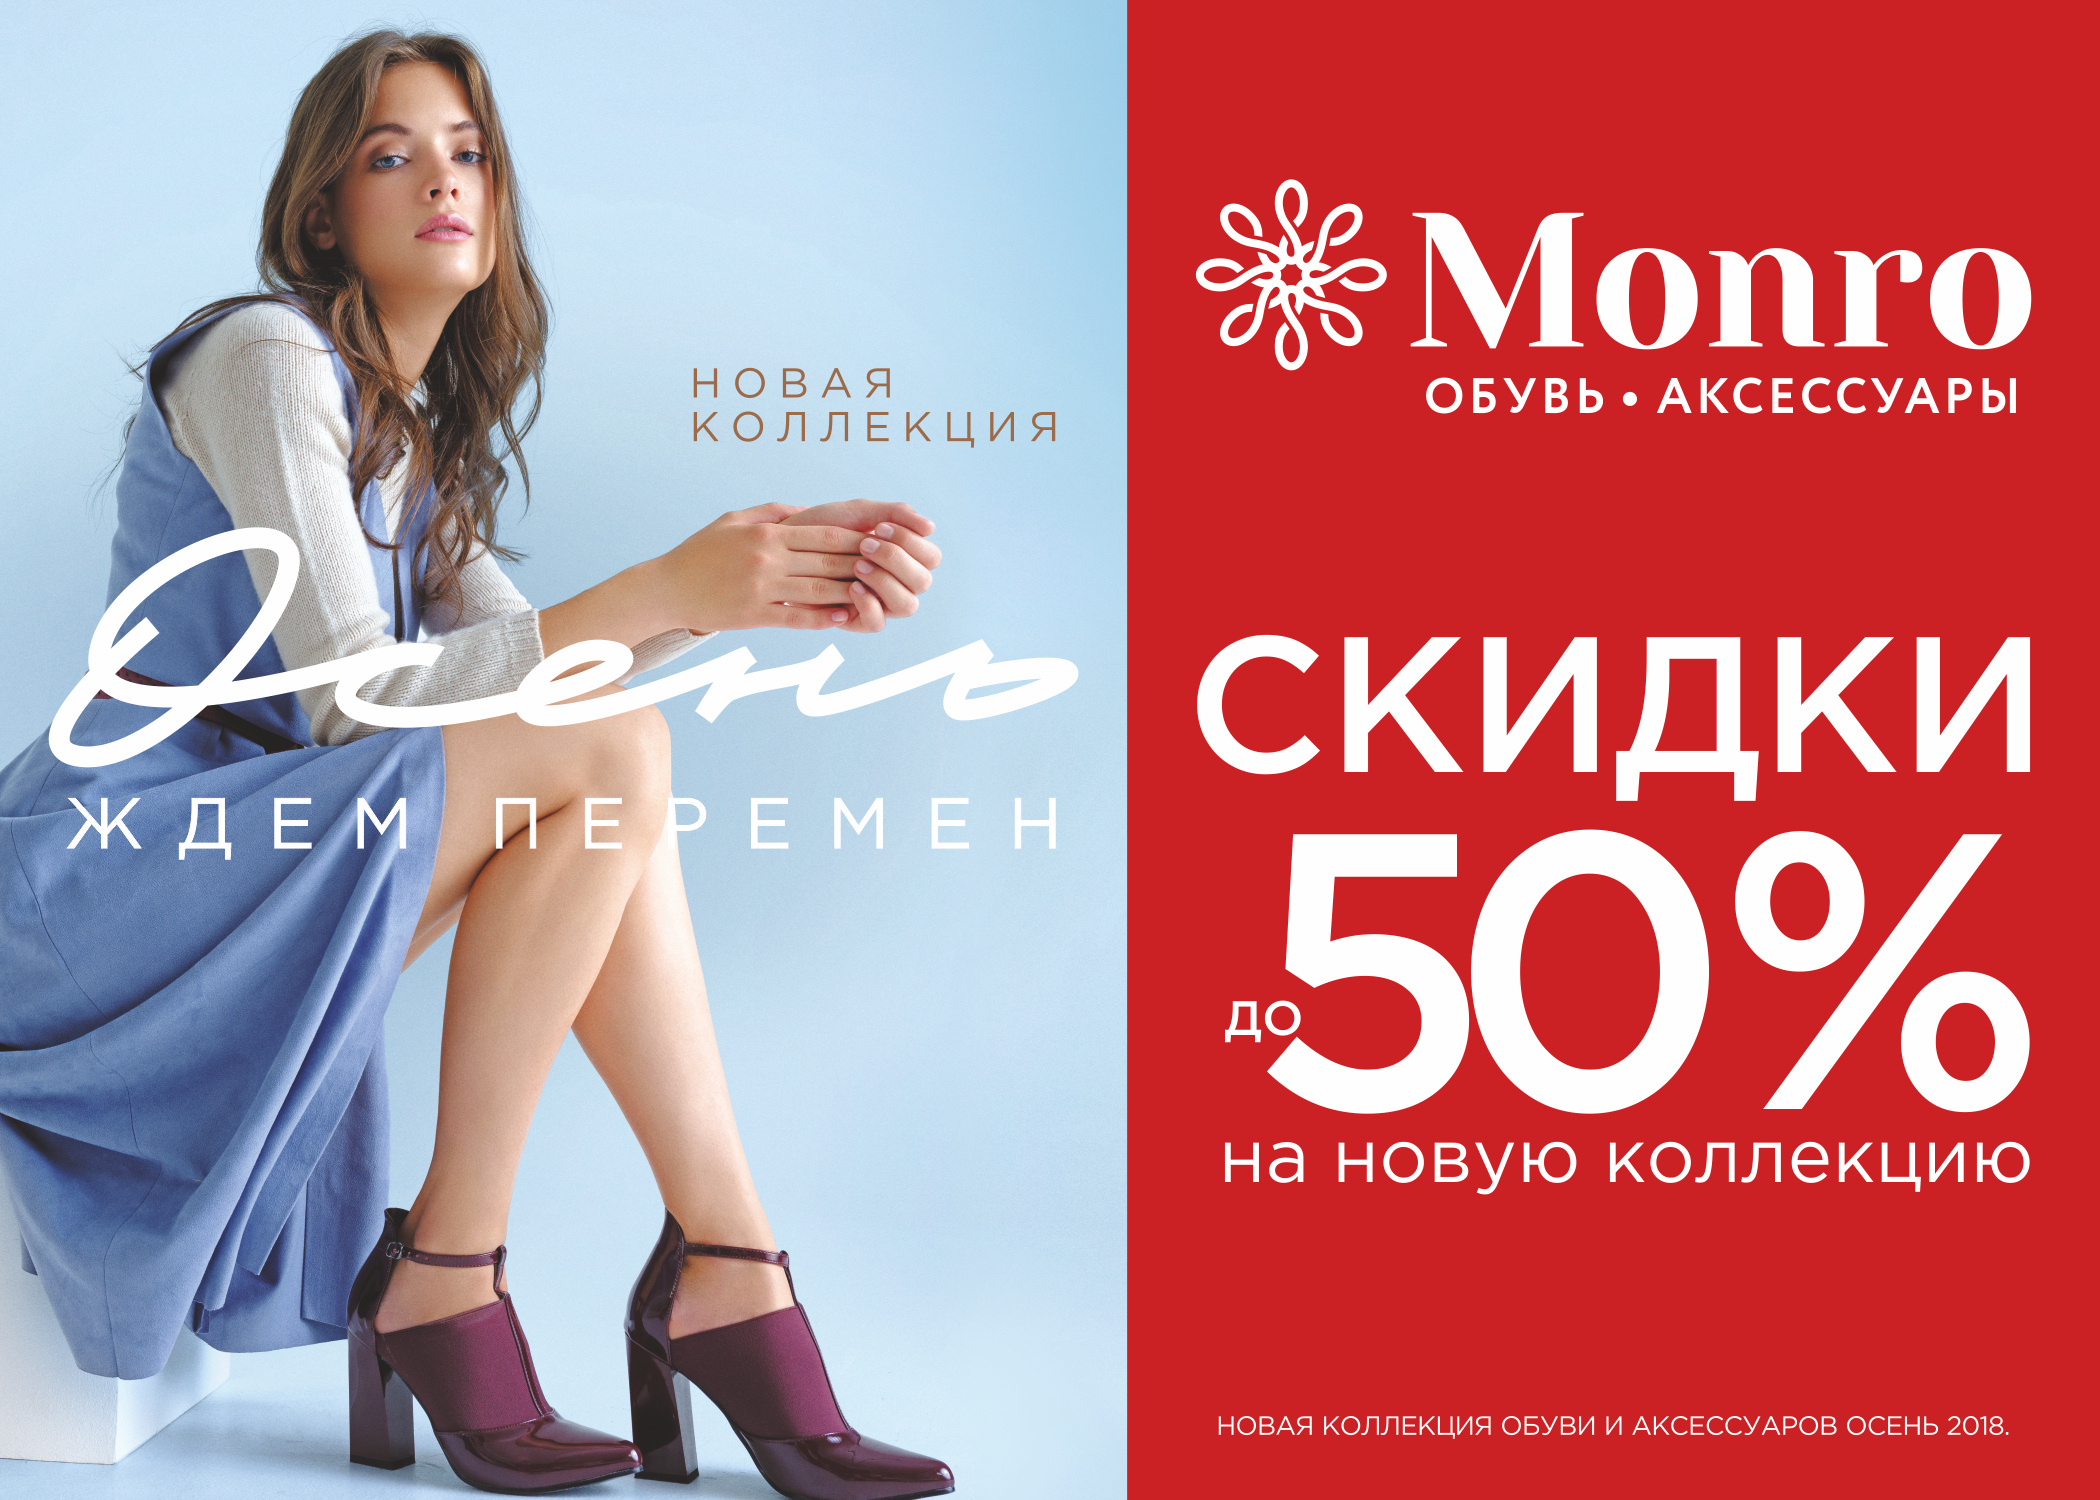 Монро каталог обуви с ценами омск. Скидки на новую коллекцию обувь. Монро реклама обувь. Монро обувь логотип. Сеть магазинов Монро.